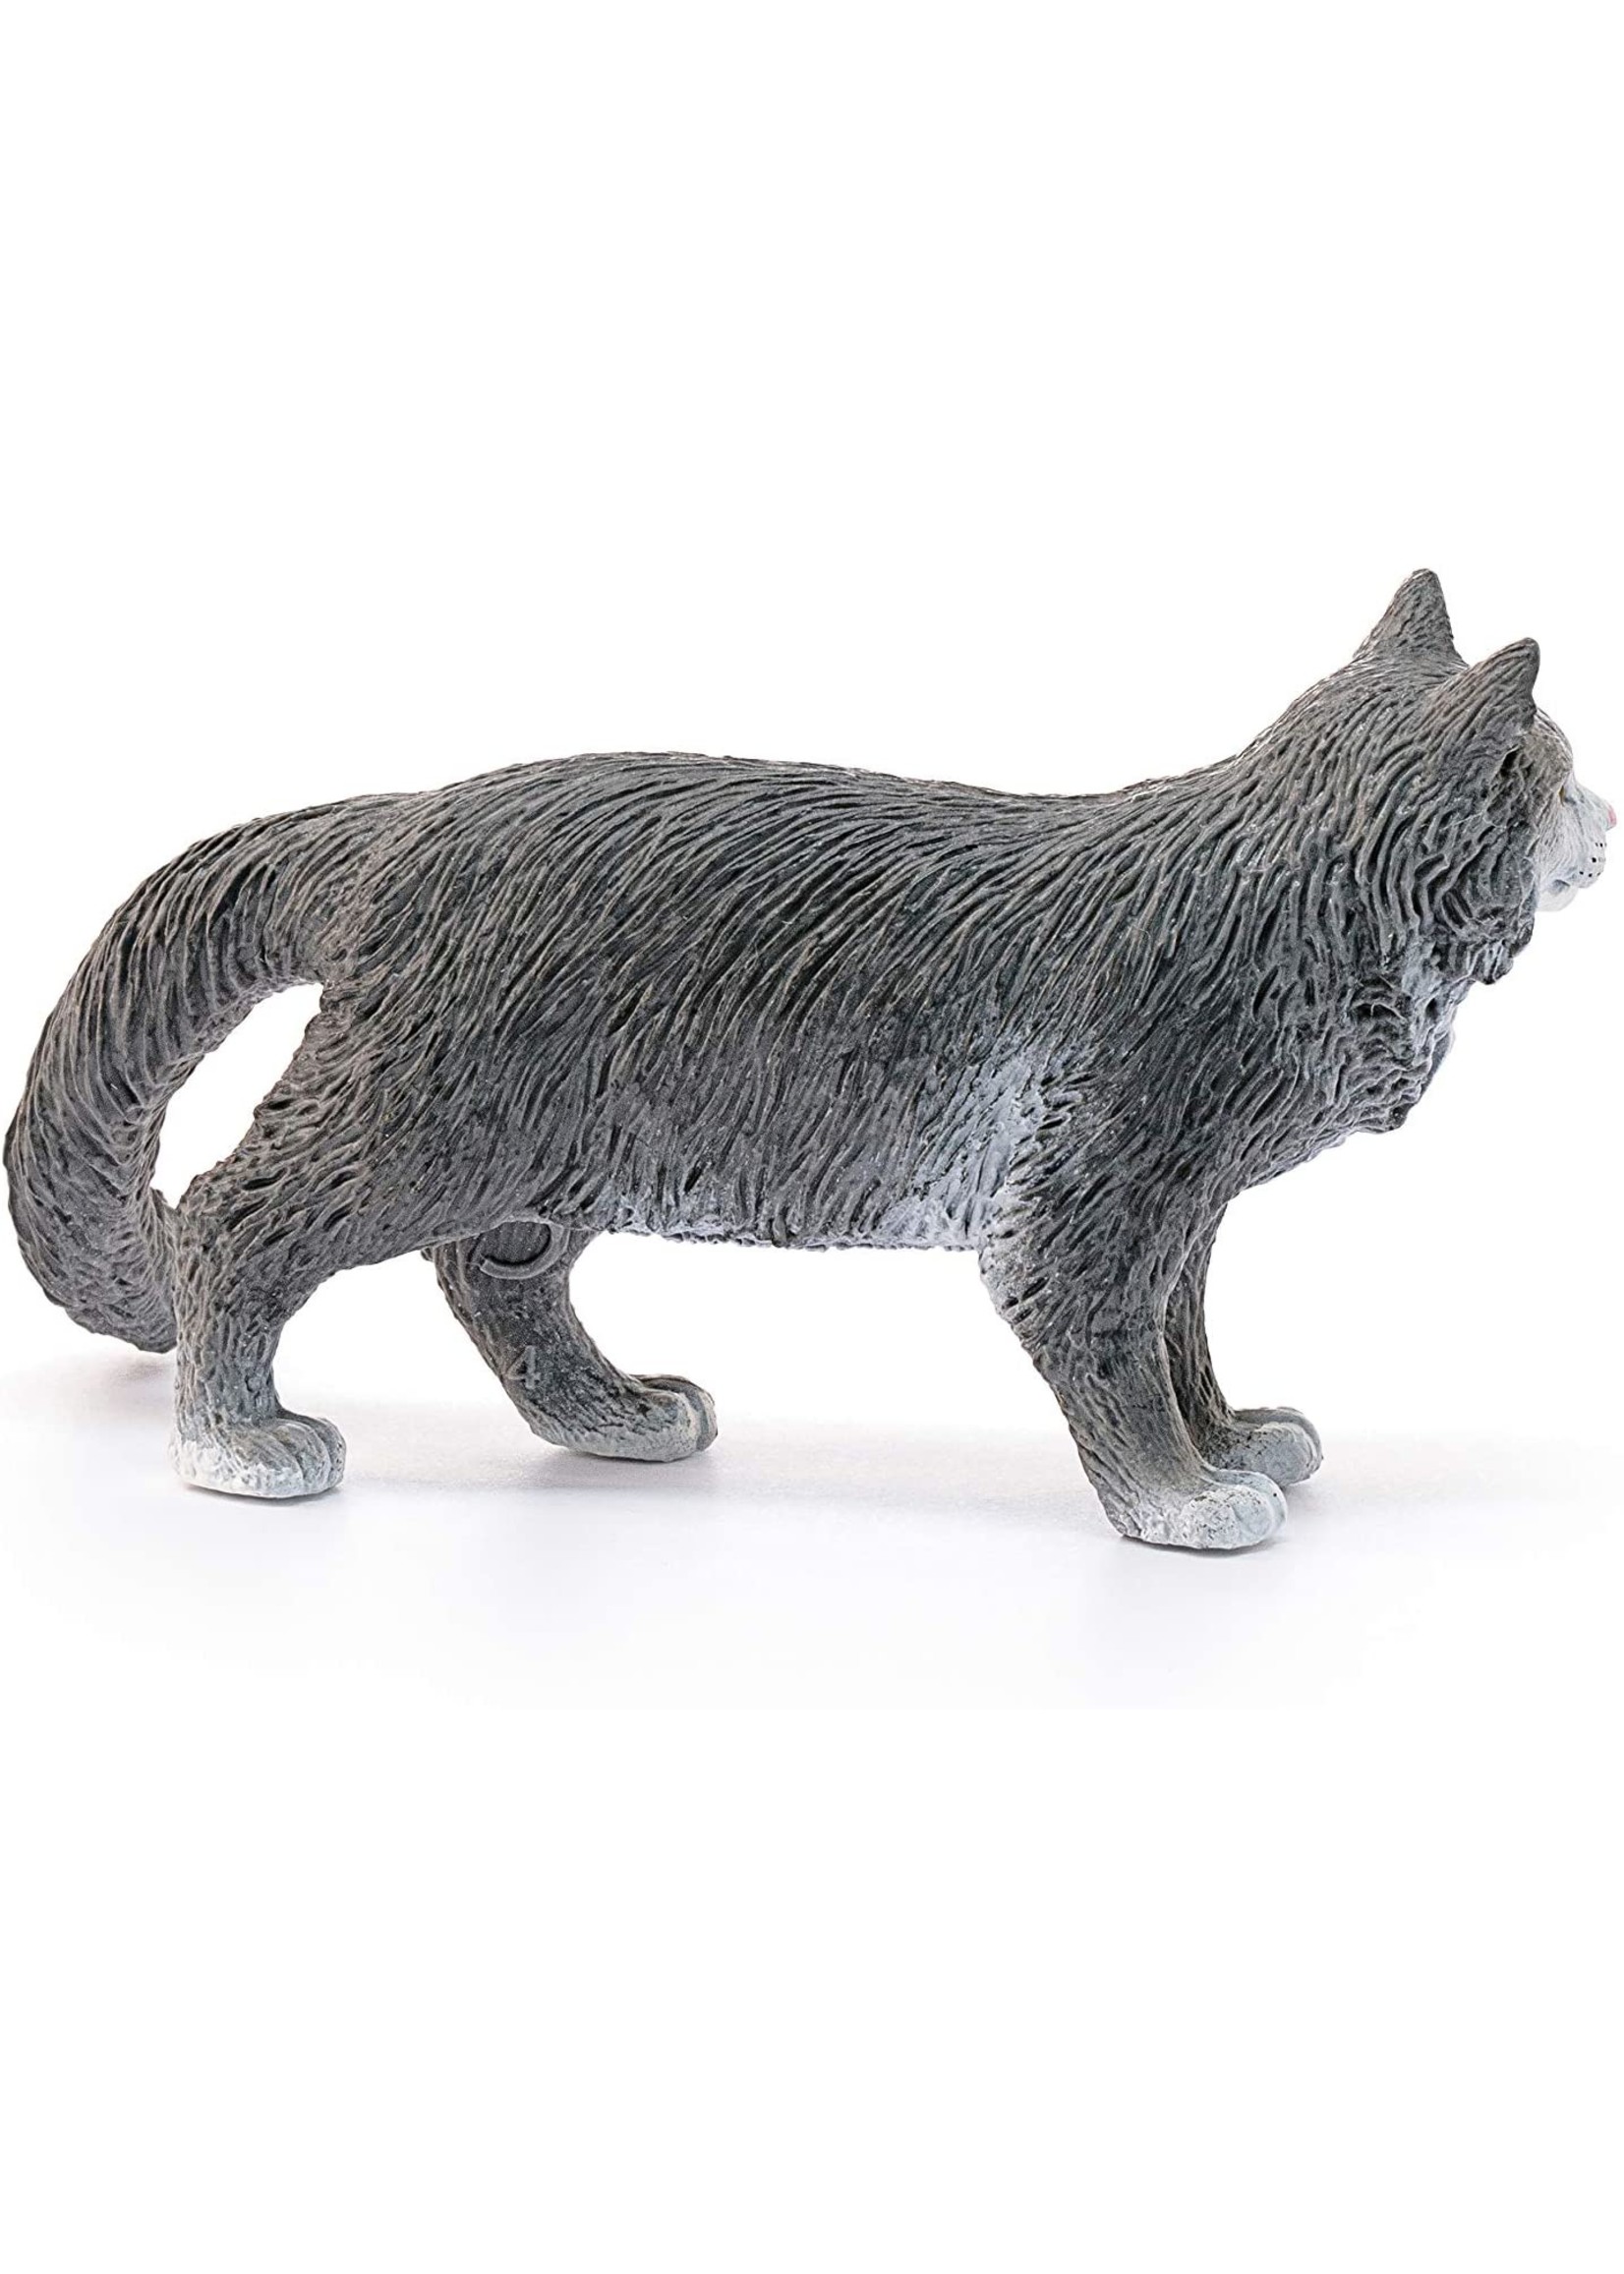 Schleich 13893 - Maine Coon Cat